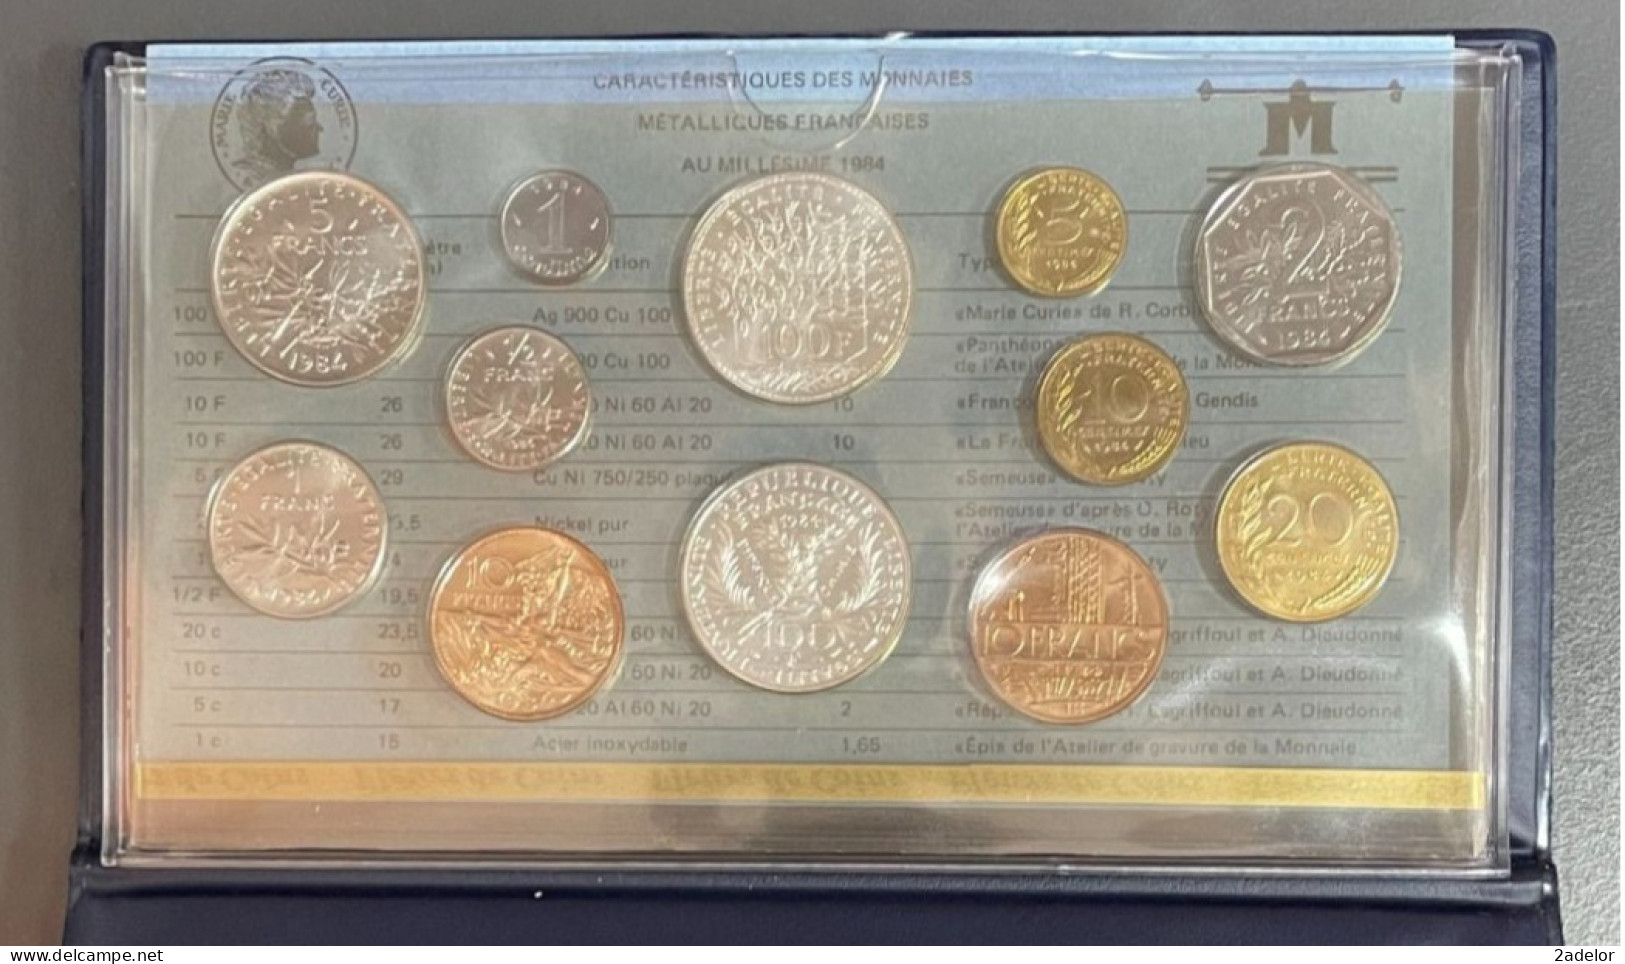 Coffret Série De Pièces Françaises Fleurs De Coins 1984, De 1 Centime à 100 Frs - Gedenkmünzen